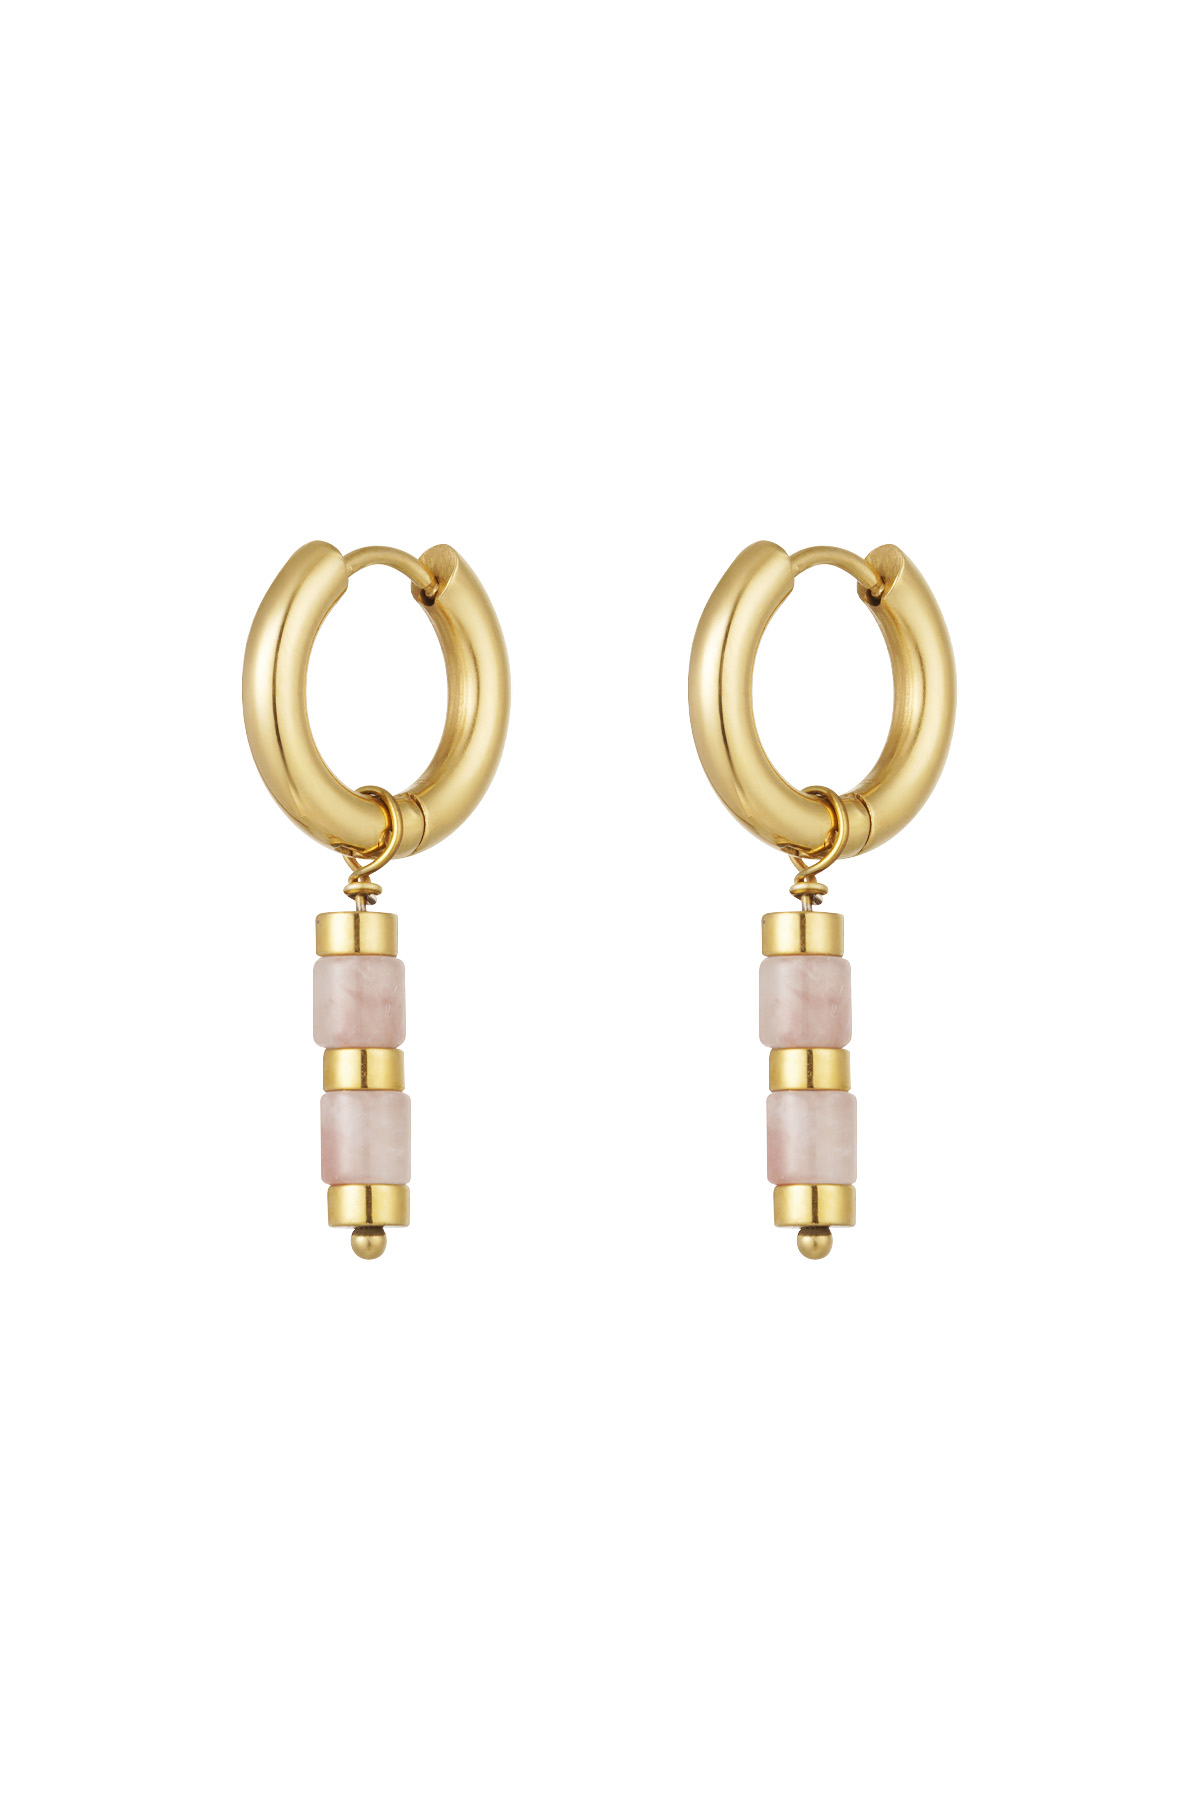 Ohrringe mit Perlen und goldenen Details – Gold/Hellrosa